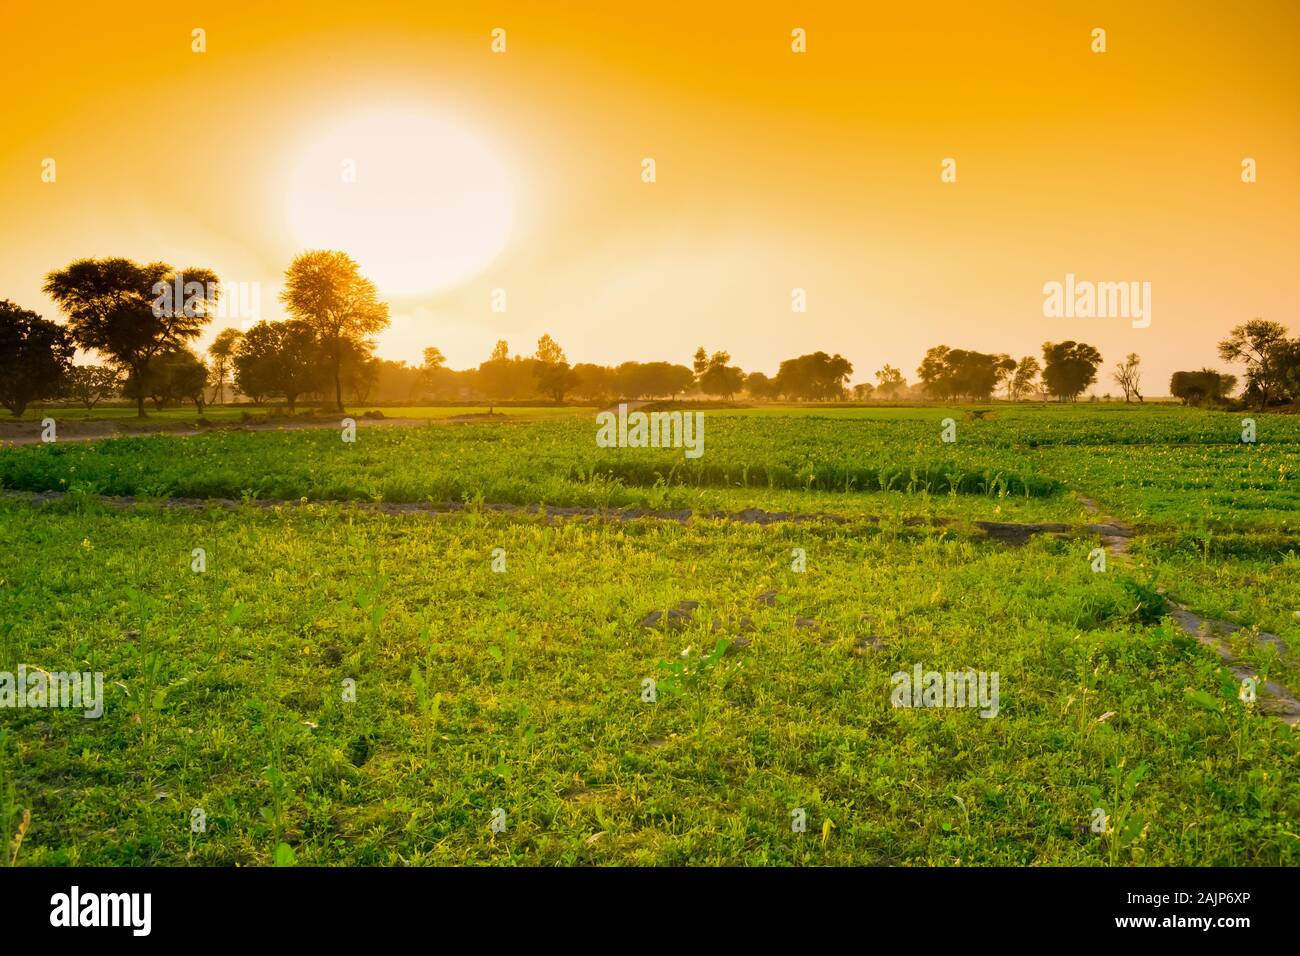 Wunderschöne Landschaft Bild der Sonnenuntergang auf die grünen Felder im Punjab, Pakistan. Stockfoto